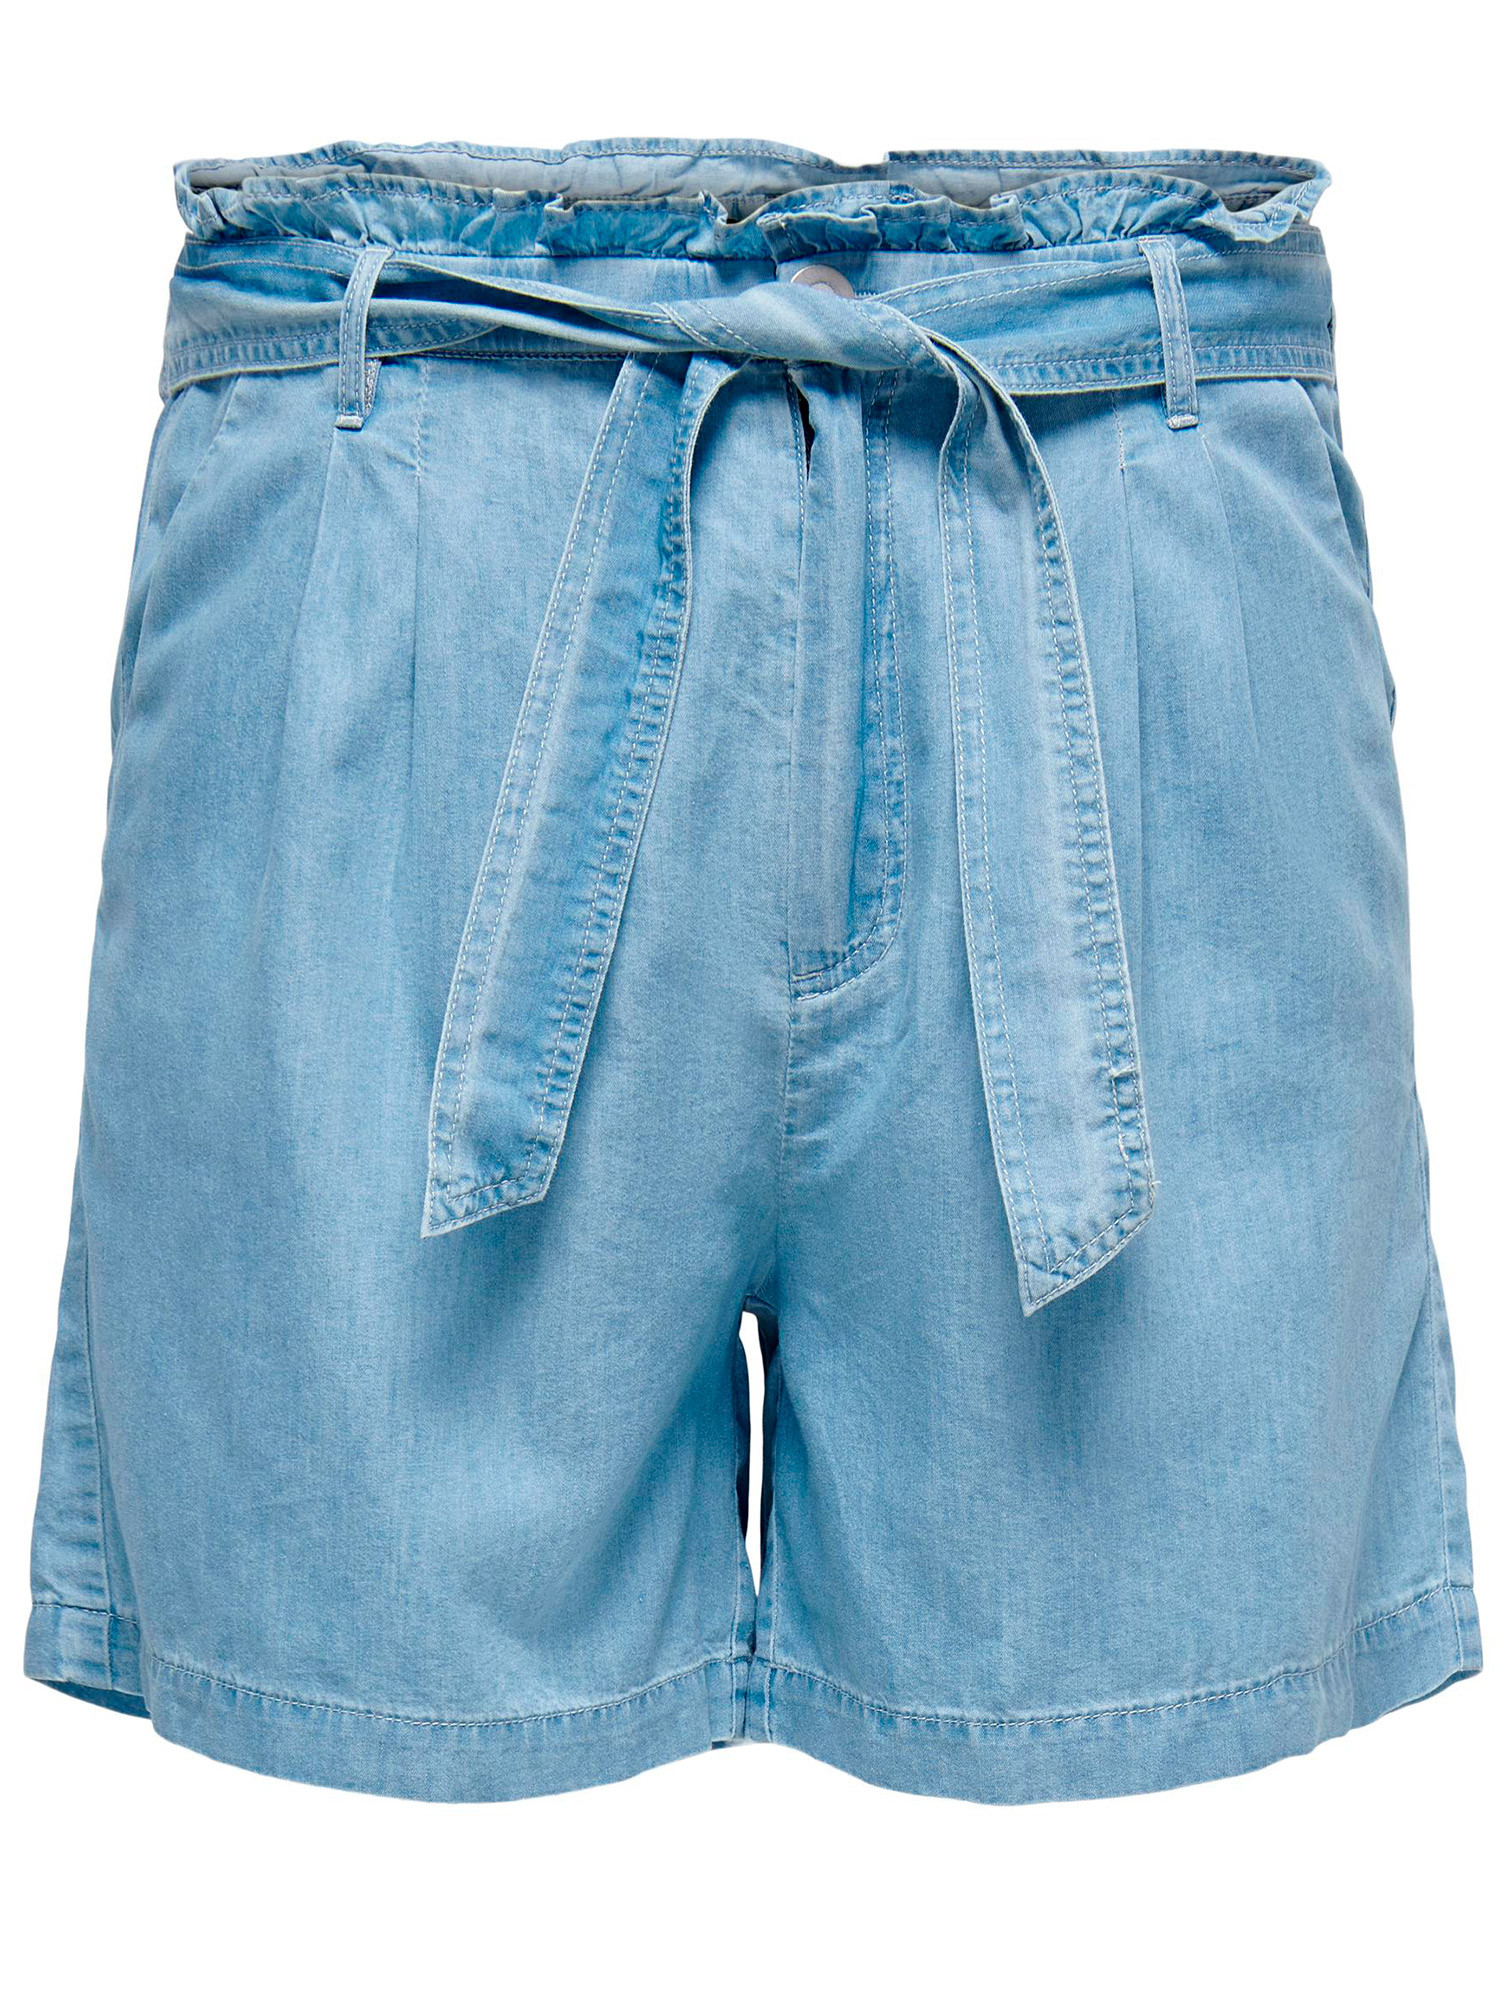 Carlaola - Ljusblå stretchiga jeansshorts